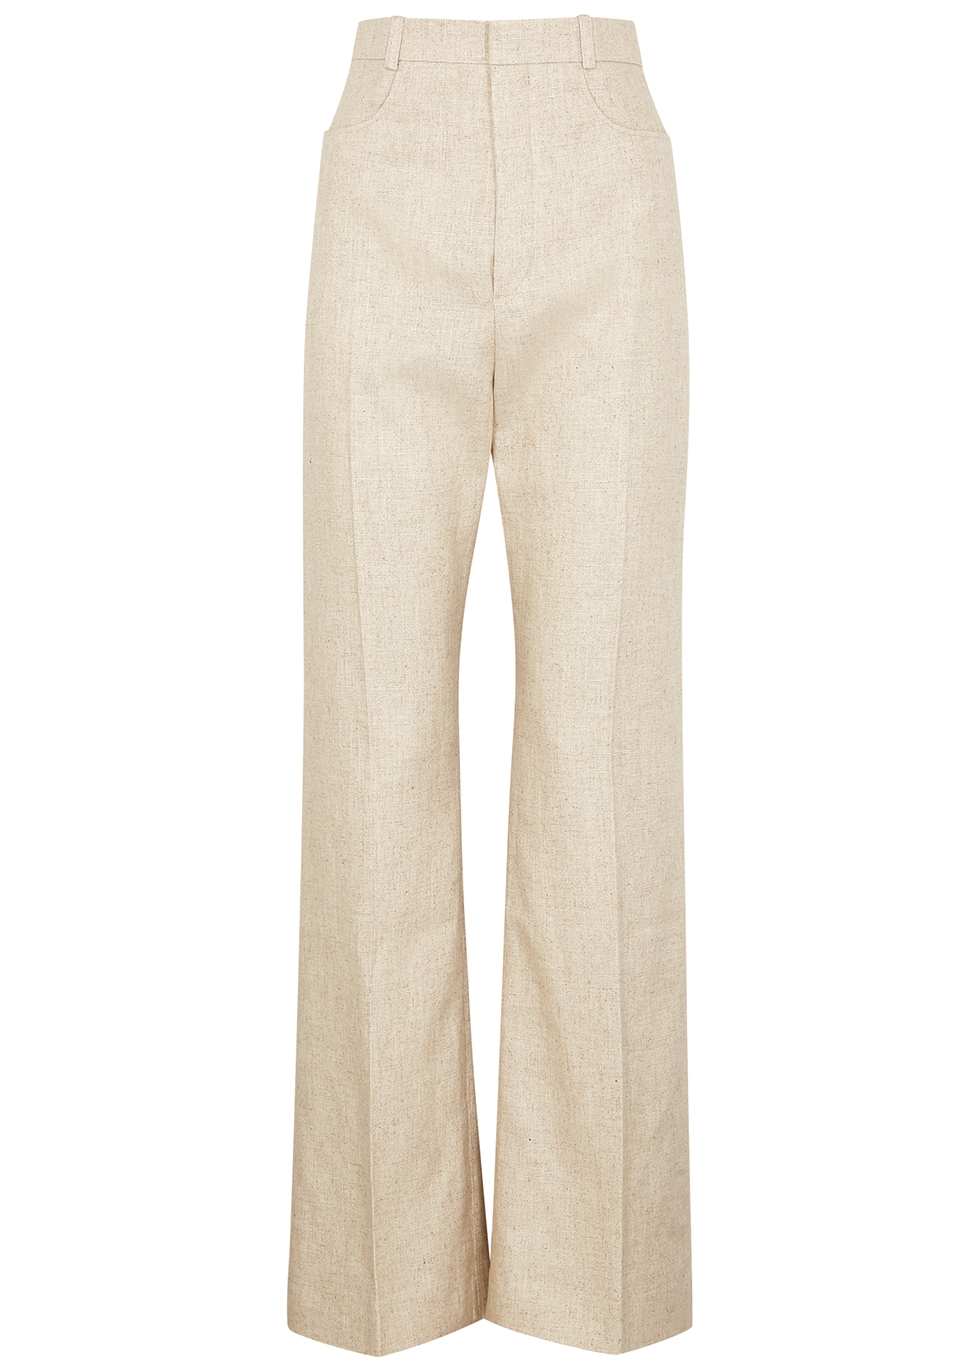 Le Pantalon Sauge stone linen-blend trousers